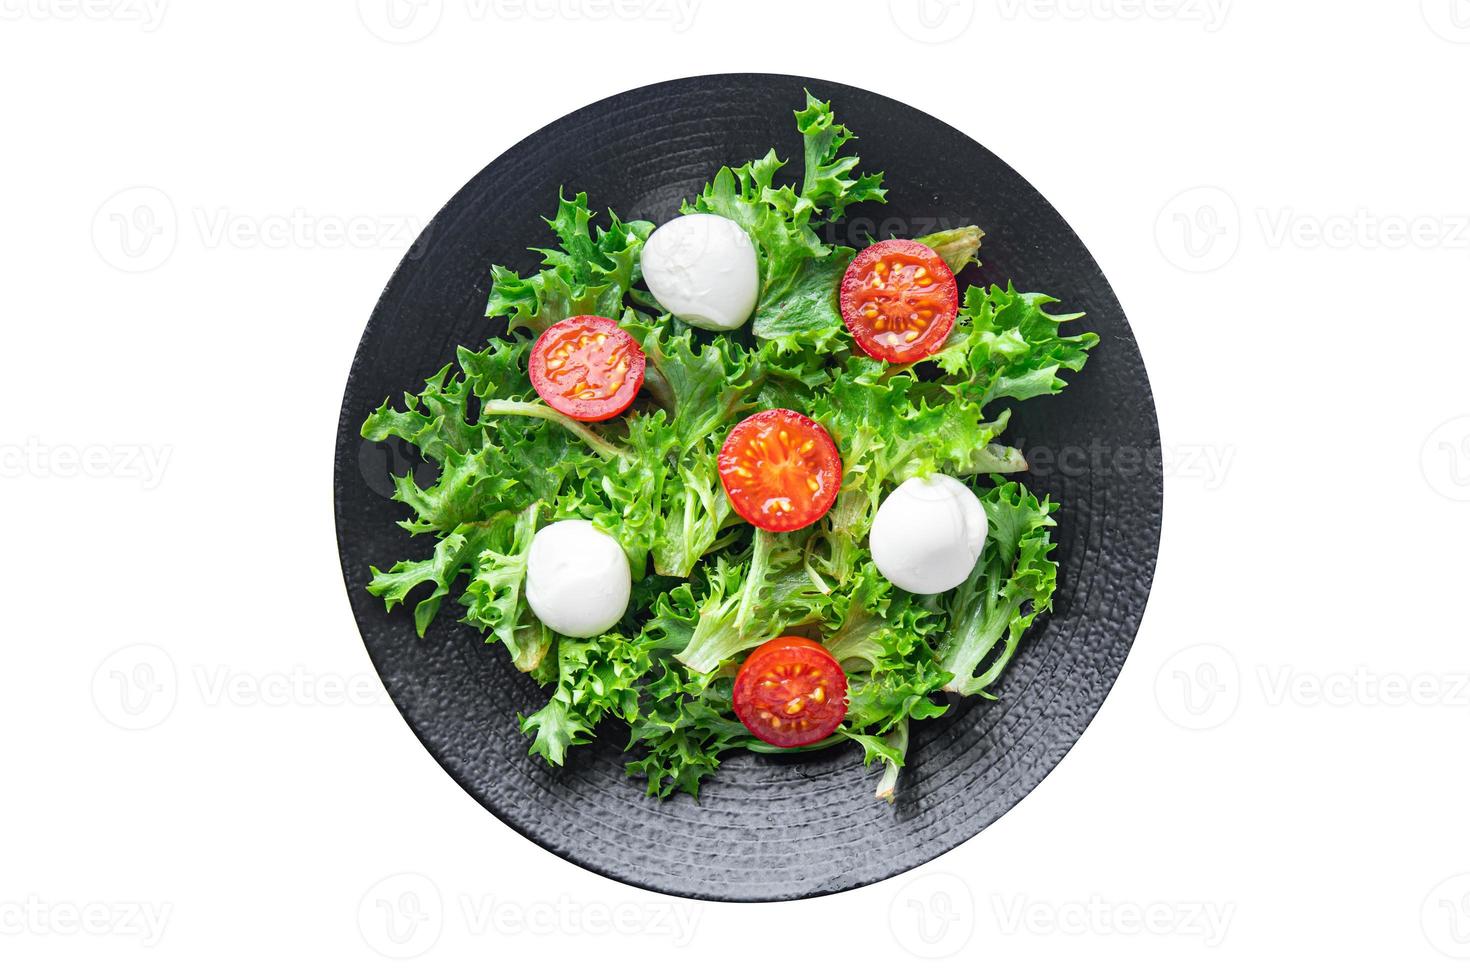 salade mozzarella, tomate, laitue, roquette repas sain nourriture végétalienne ou végétarienne photo